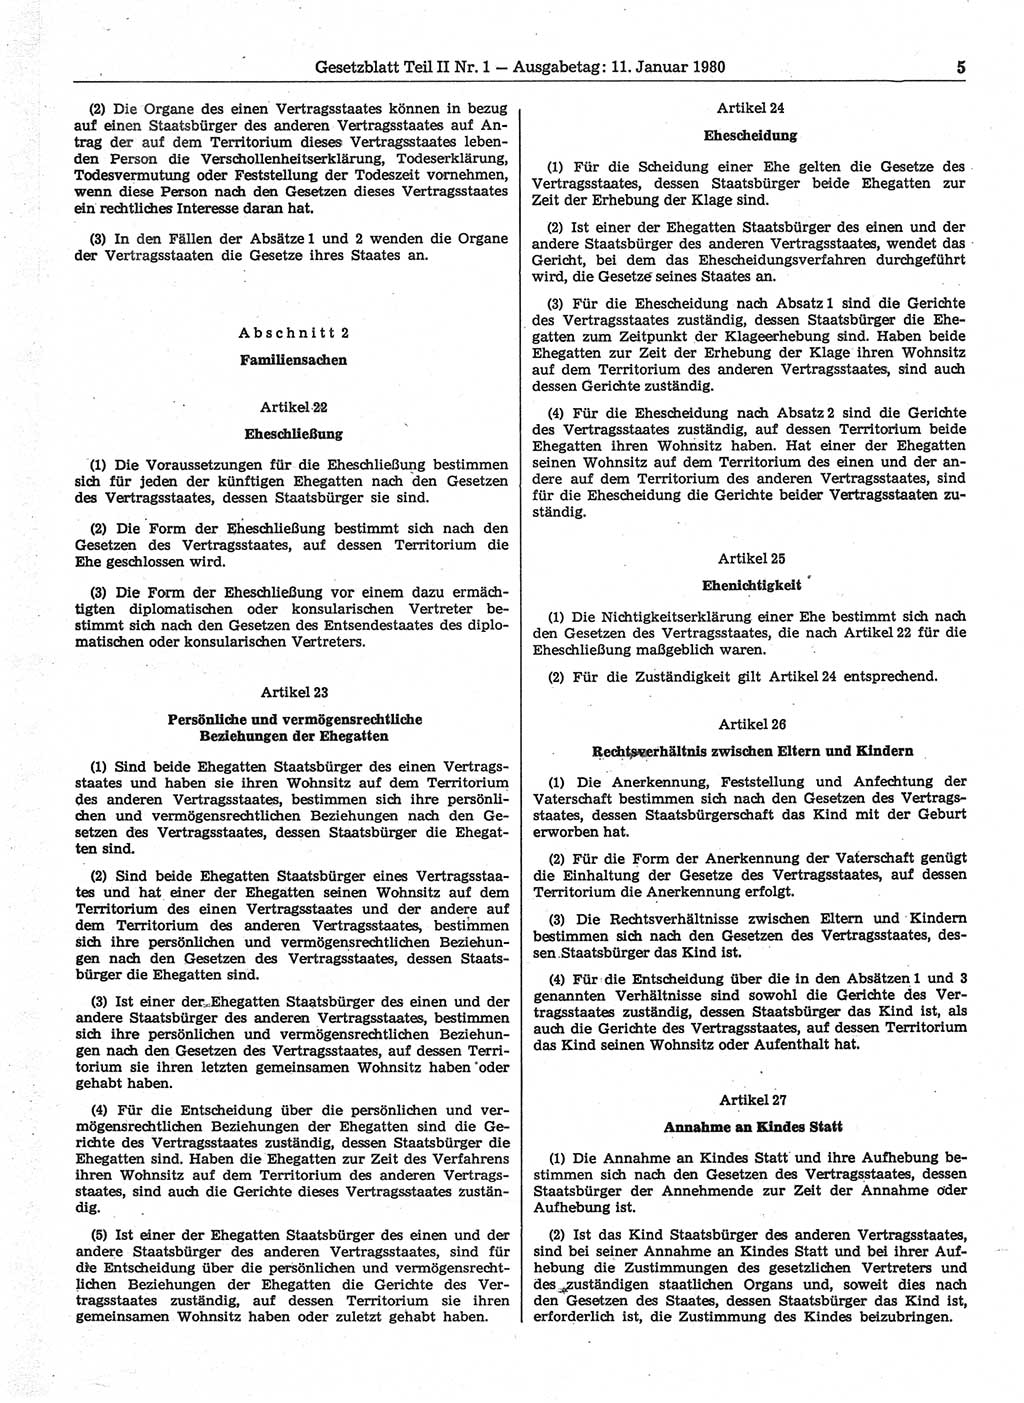 Gesetzblatt (GBl.) der Deutschen Demokratischen Republik (DDR) Teil ⅠⅠ 1980, Seite 5 (GBl. DDR ⅠⅠ 1980, S. 5)